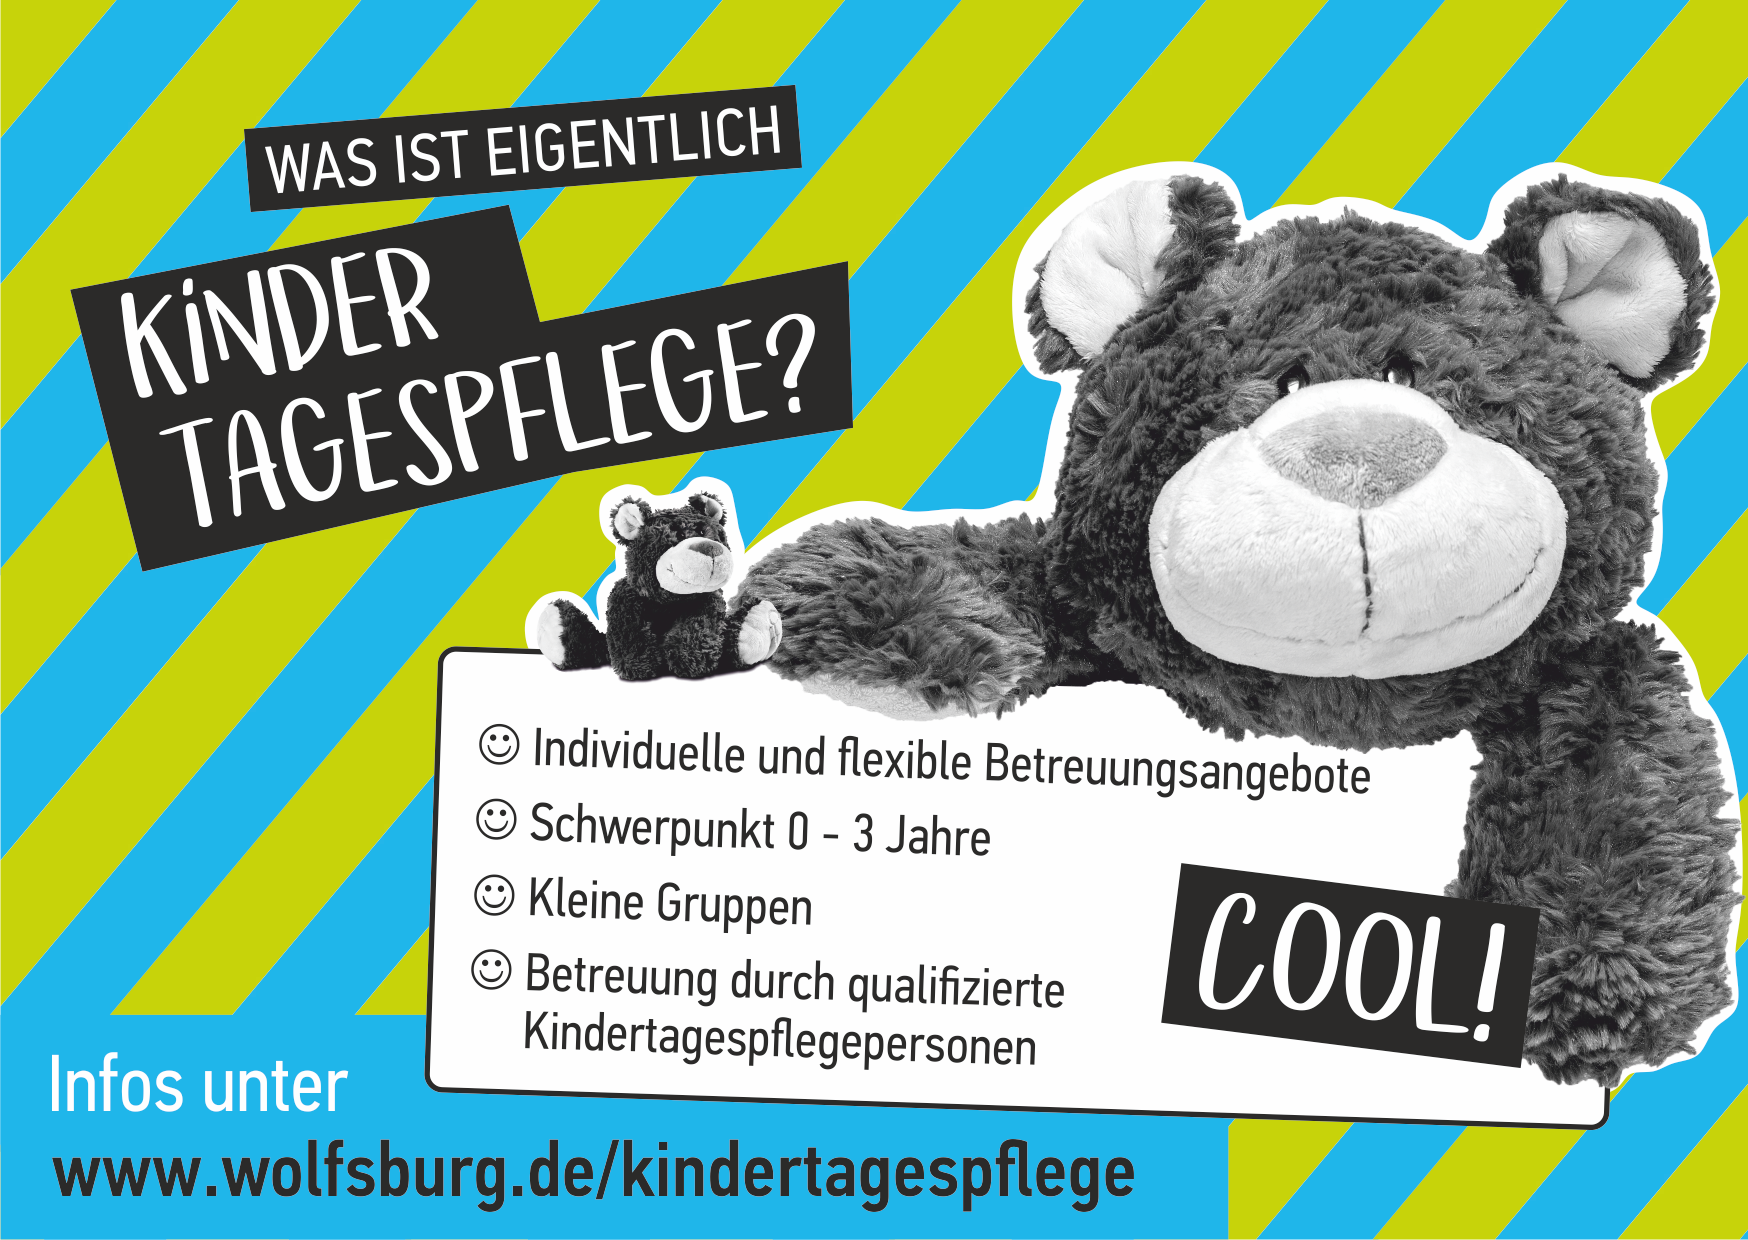 Wolle Wolfsburg - Child day care